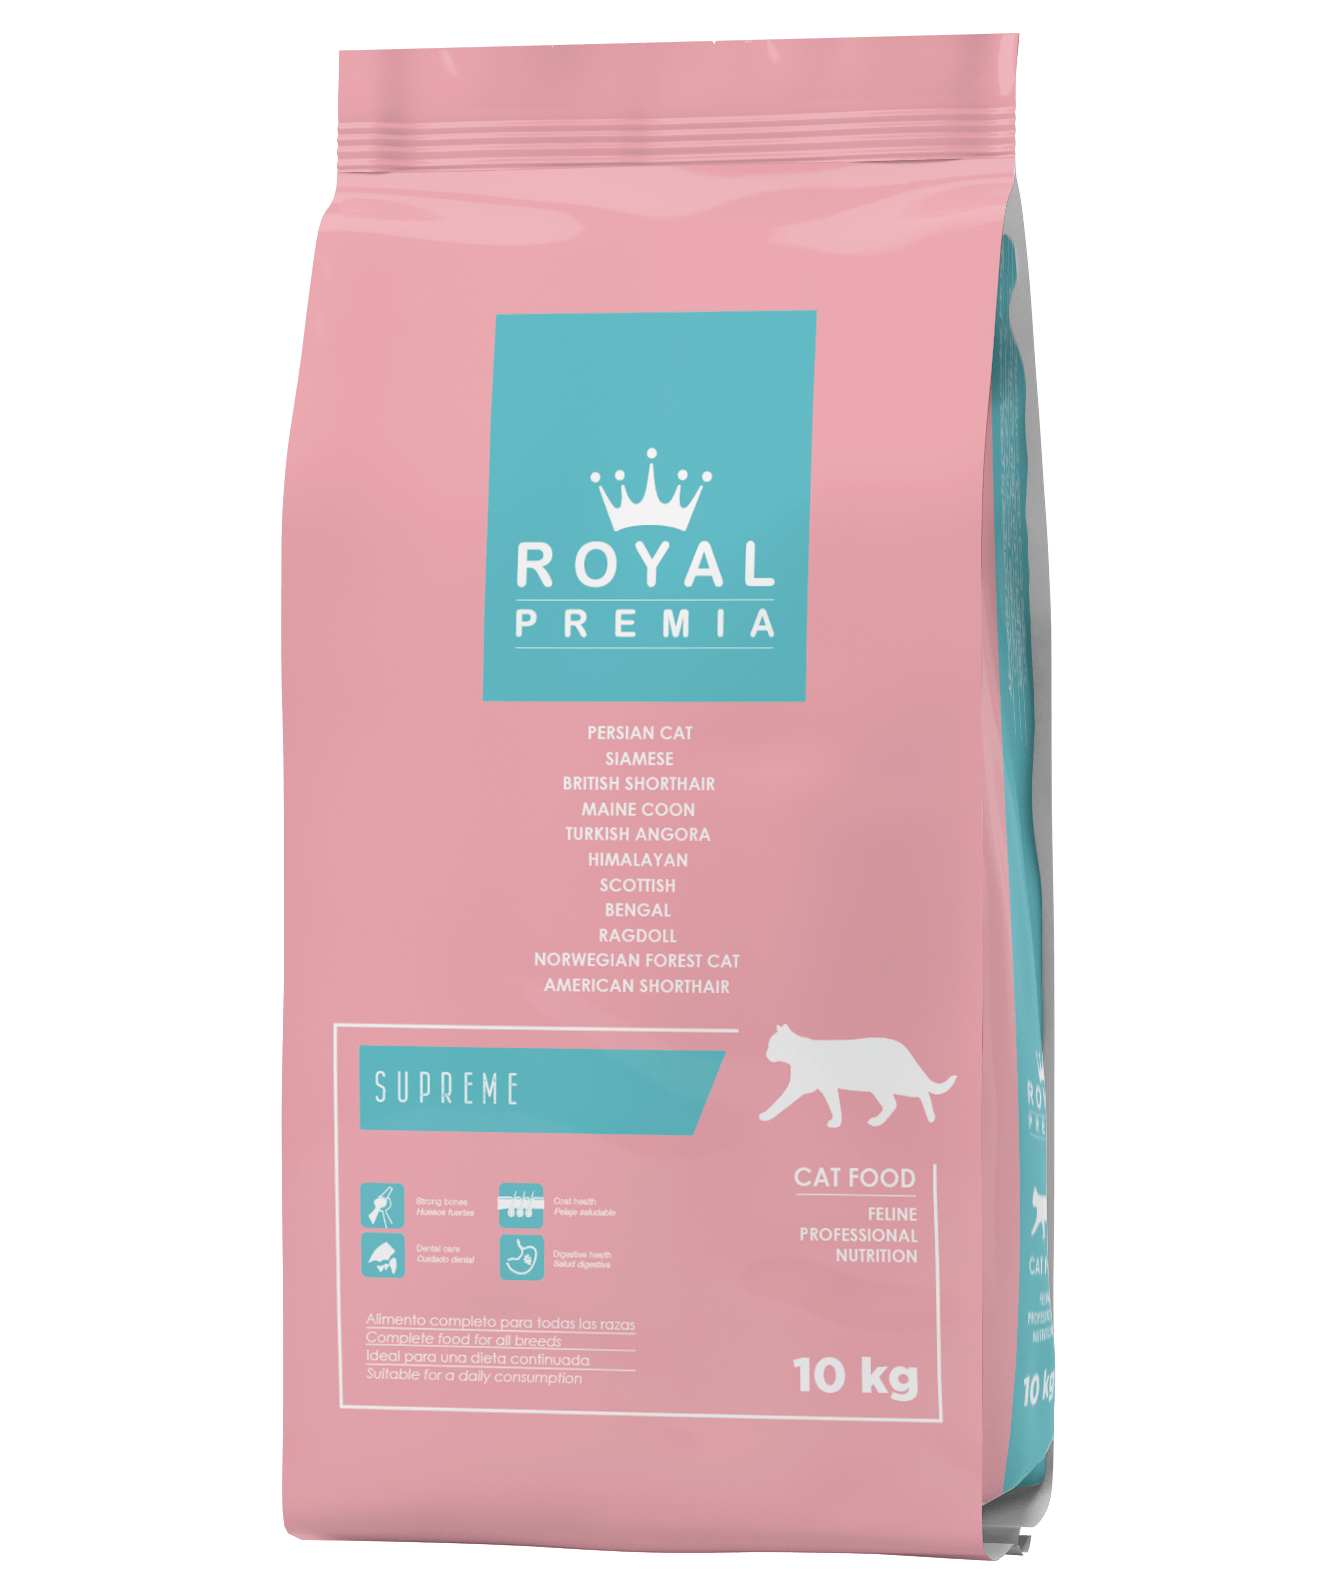 Royal Premia Dry Cat food and Kitten Food 10kg in Sharjah, Dubai